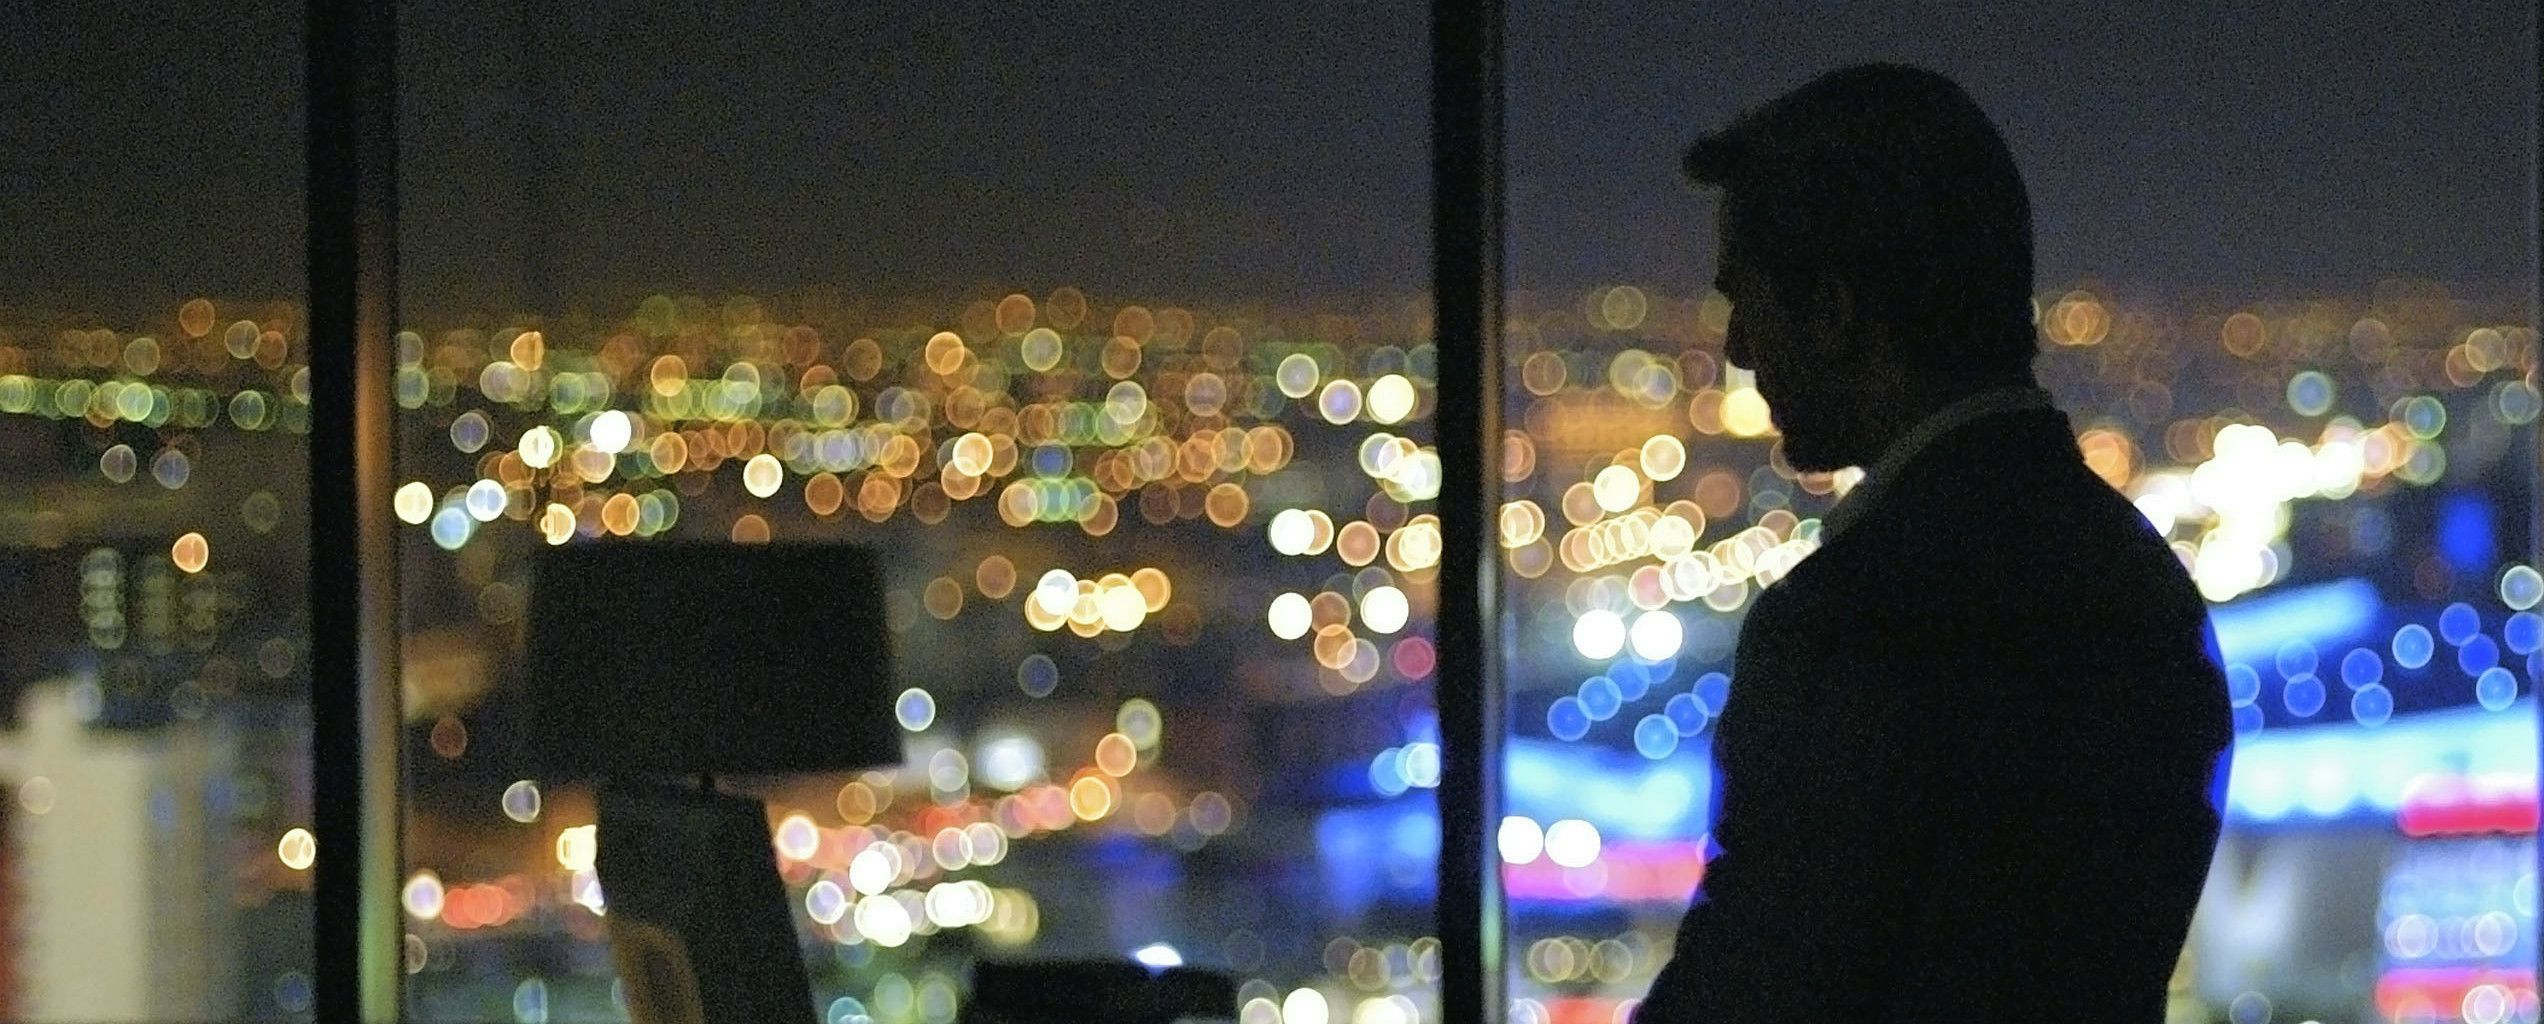 Tom Cruise devant la fenêtre d'un building de nuit avec vue sur Los Angeles